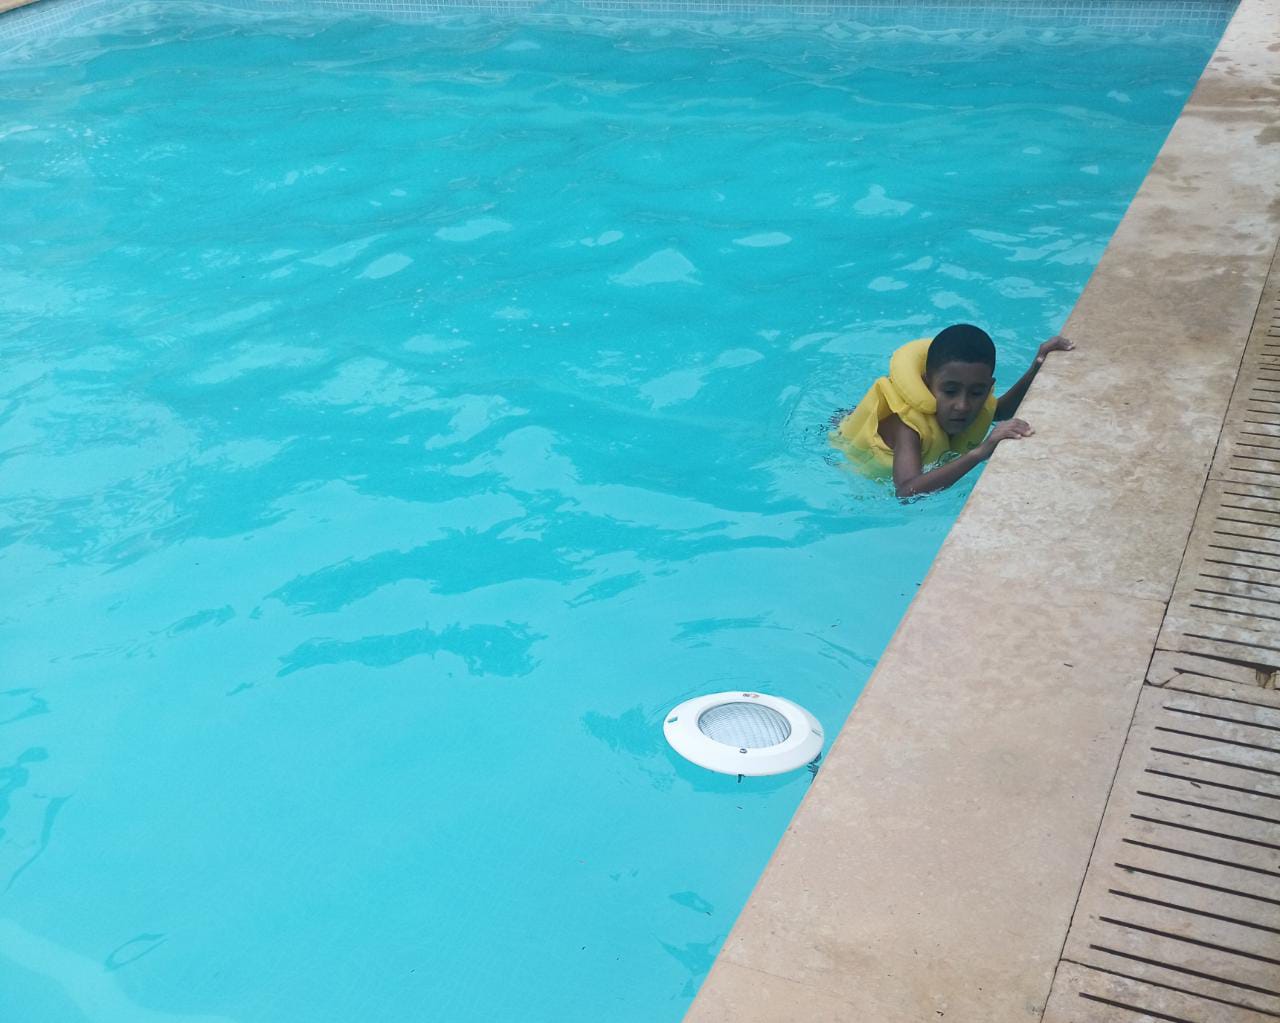 أكادير: استهتار إحدى المنتجعات السياحية بوضع اسلاك كهربائية بالمسبح